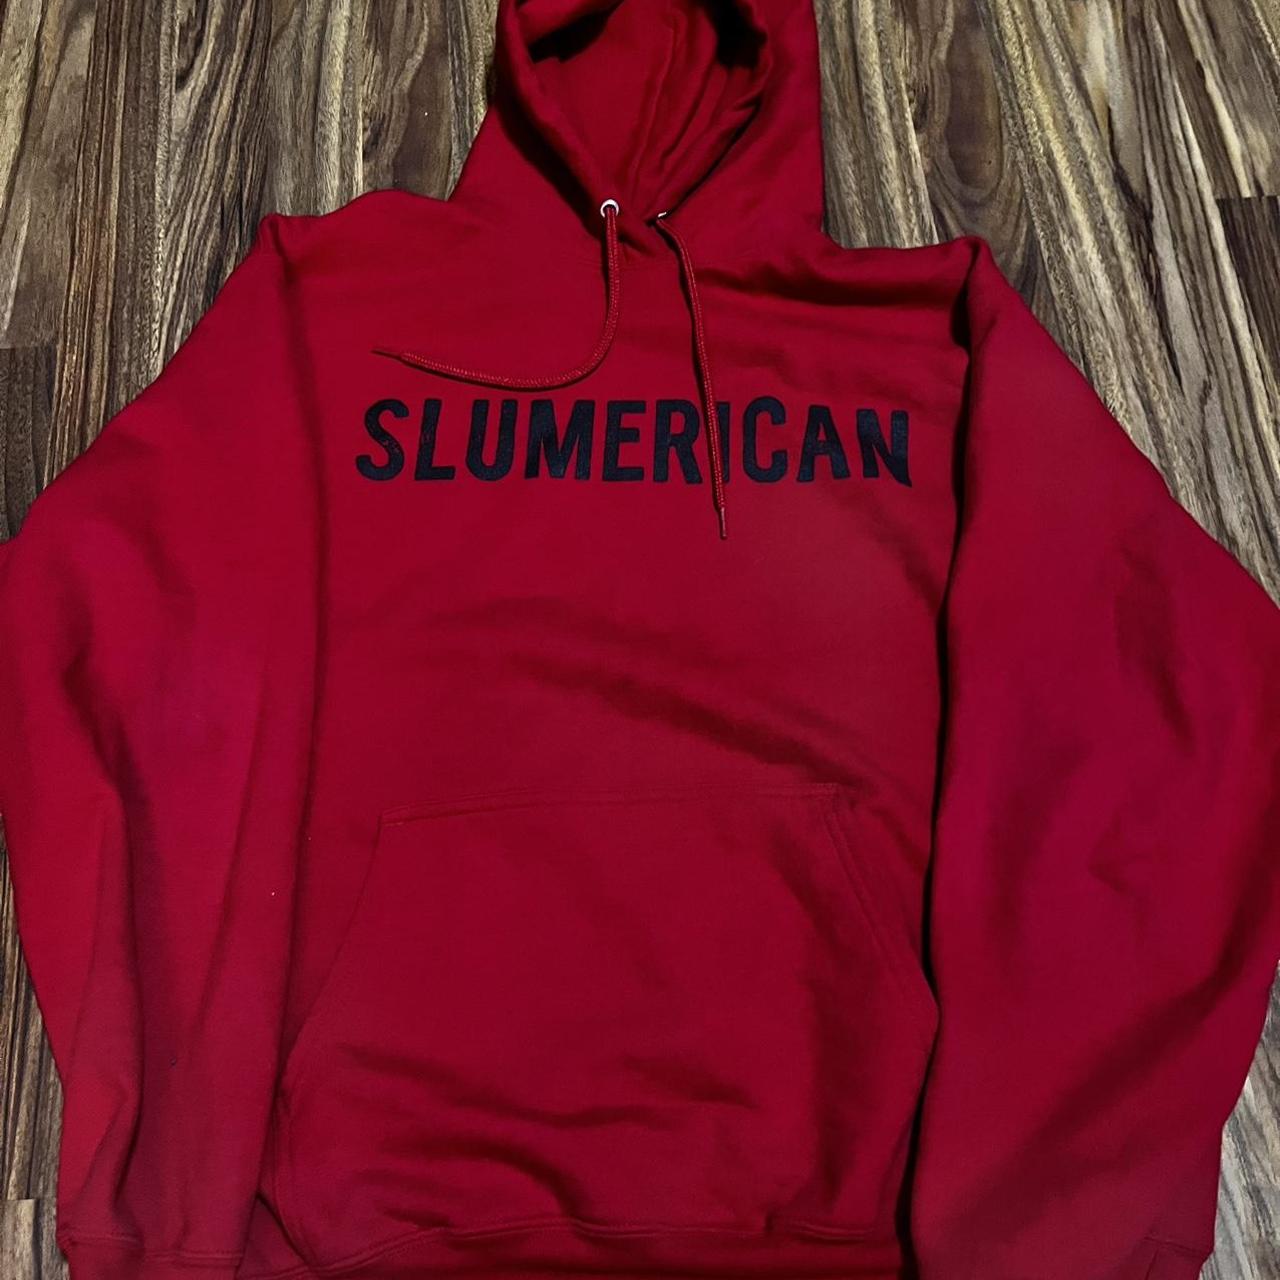 Like new red Slumerican hoodie. #slumerican... - Depop